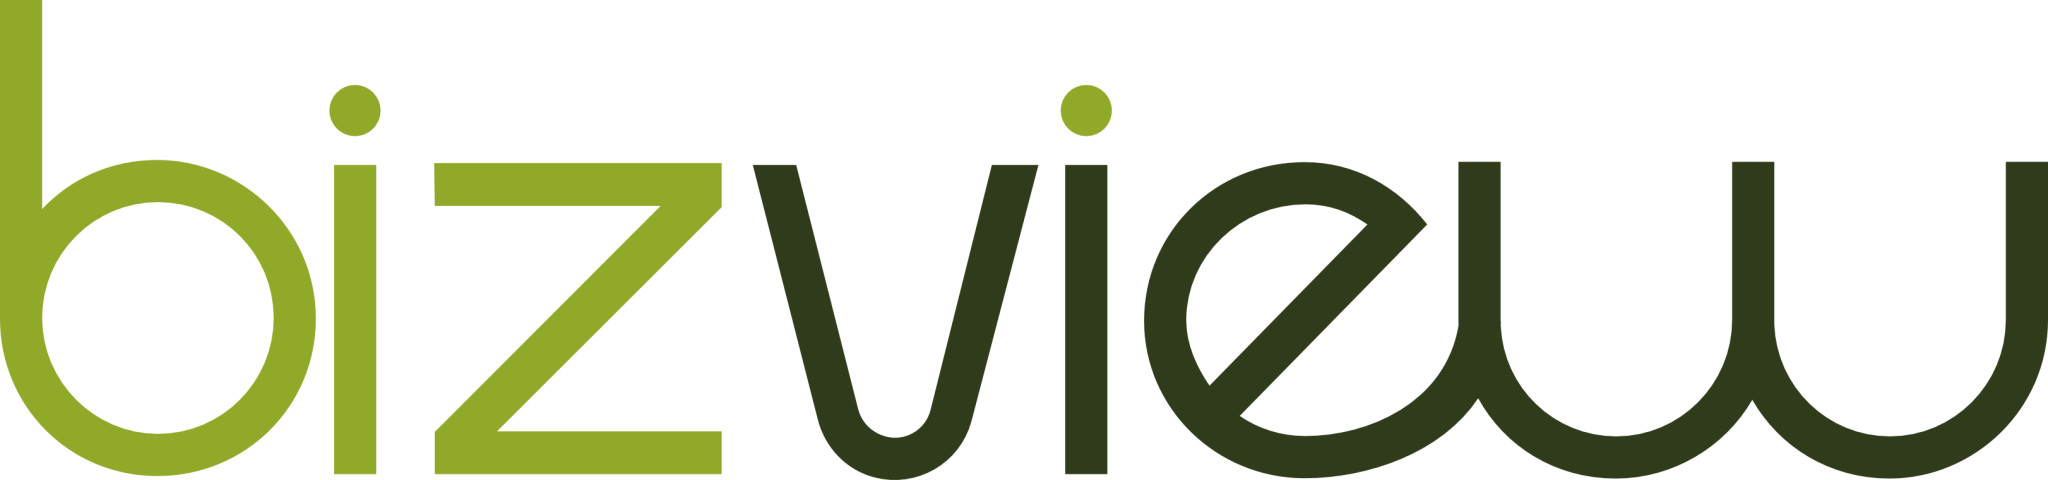 BizView Logo Xledger Integrasjon